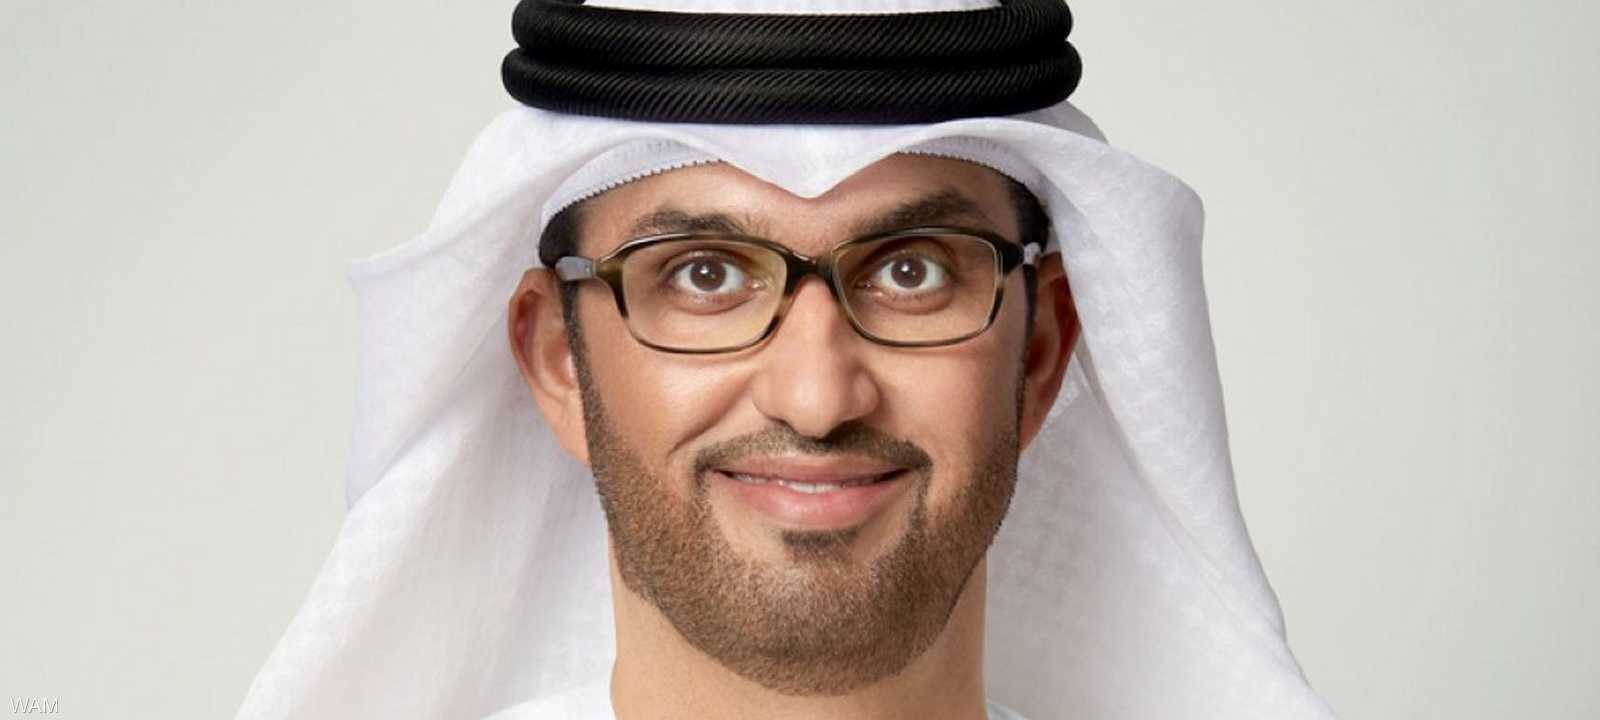 سلطان الجابر، وزير الصناعة والتكنولوجيا المتقدمة الإماراتي